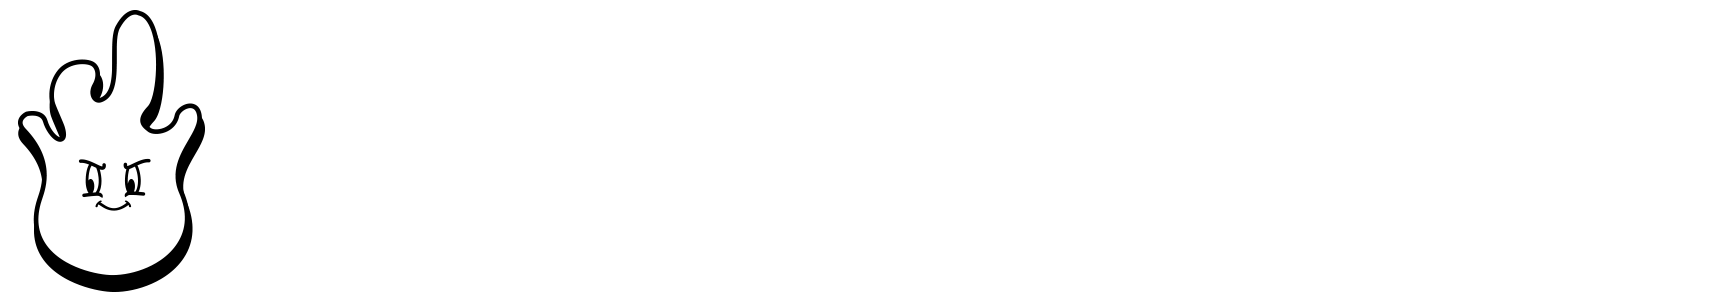 thebuggy